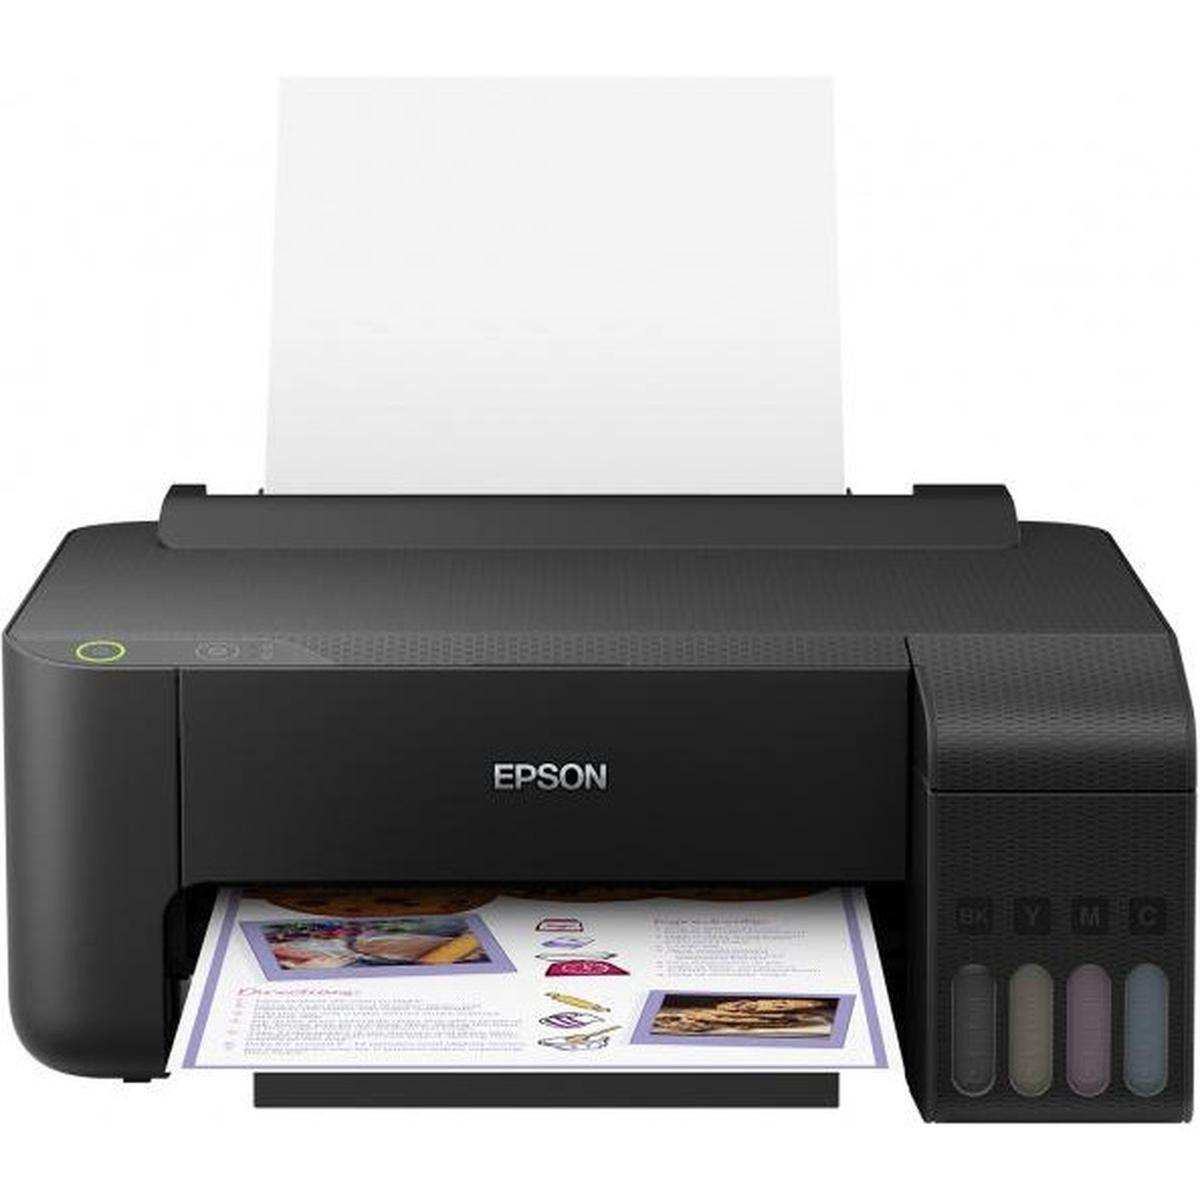 Выбираем принтер для качественной печати фото